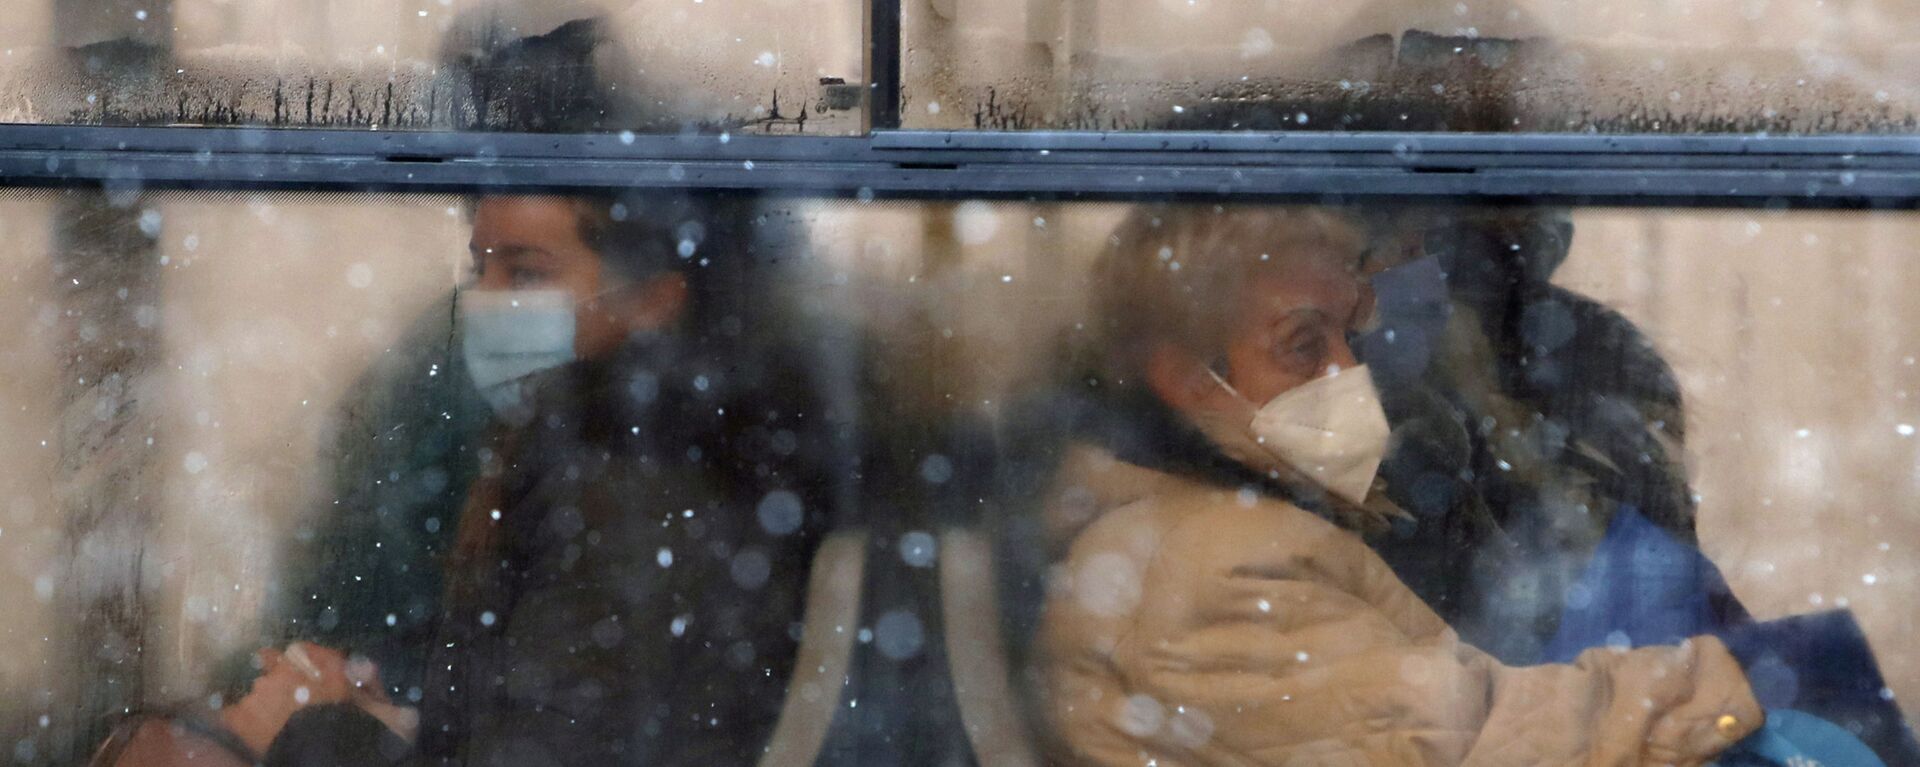 أشخاص يرتدون كمامات للوقاية من فيروس كورونا يجلسون على متن حافلة في بلغراد، صربيا،11 يناير 2021.  - سبوتنيك عربي, 1920, 09.11.2021